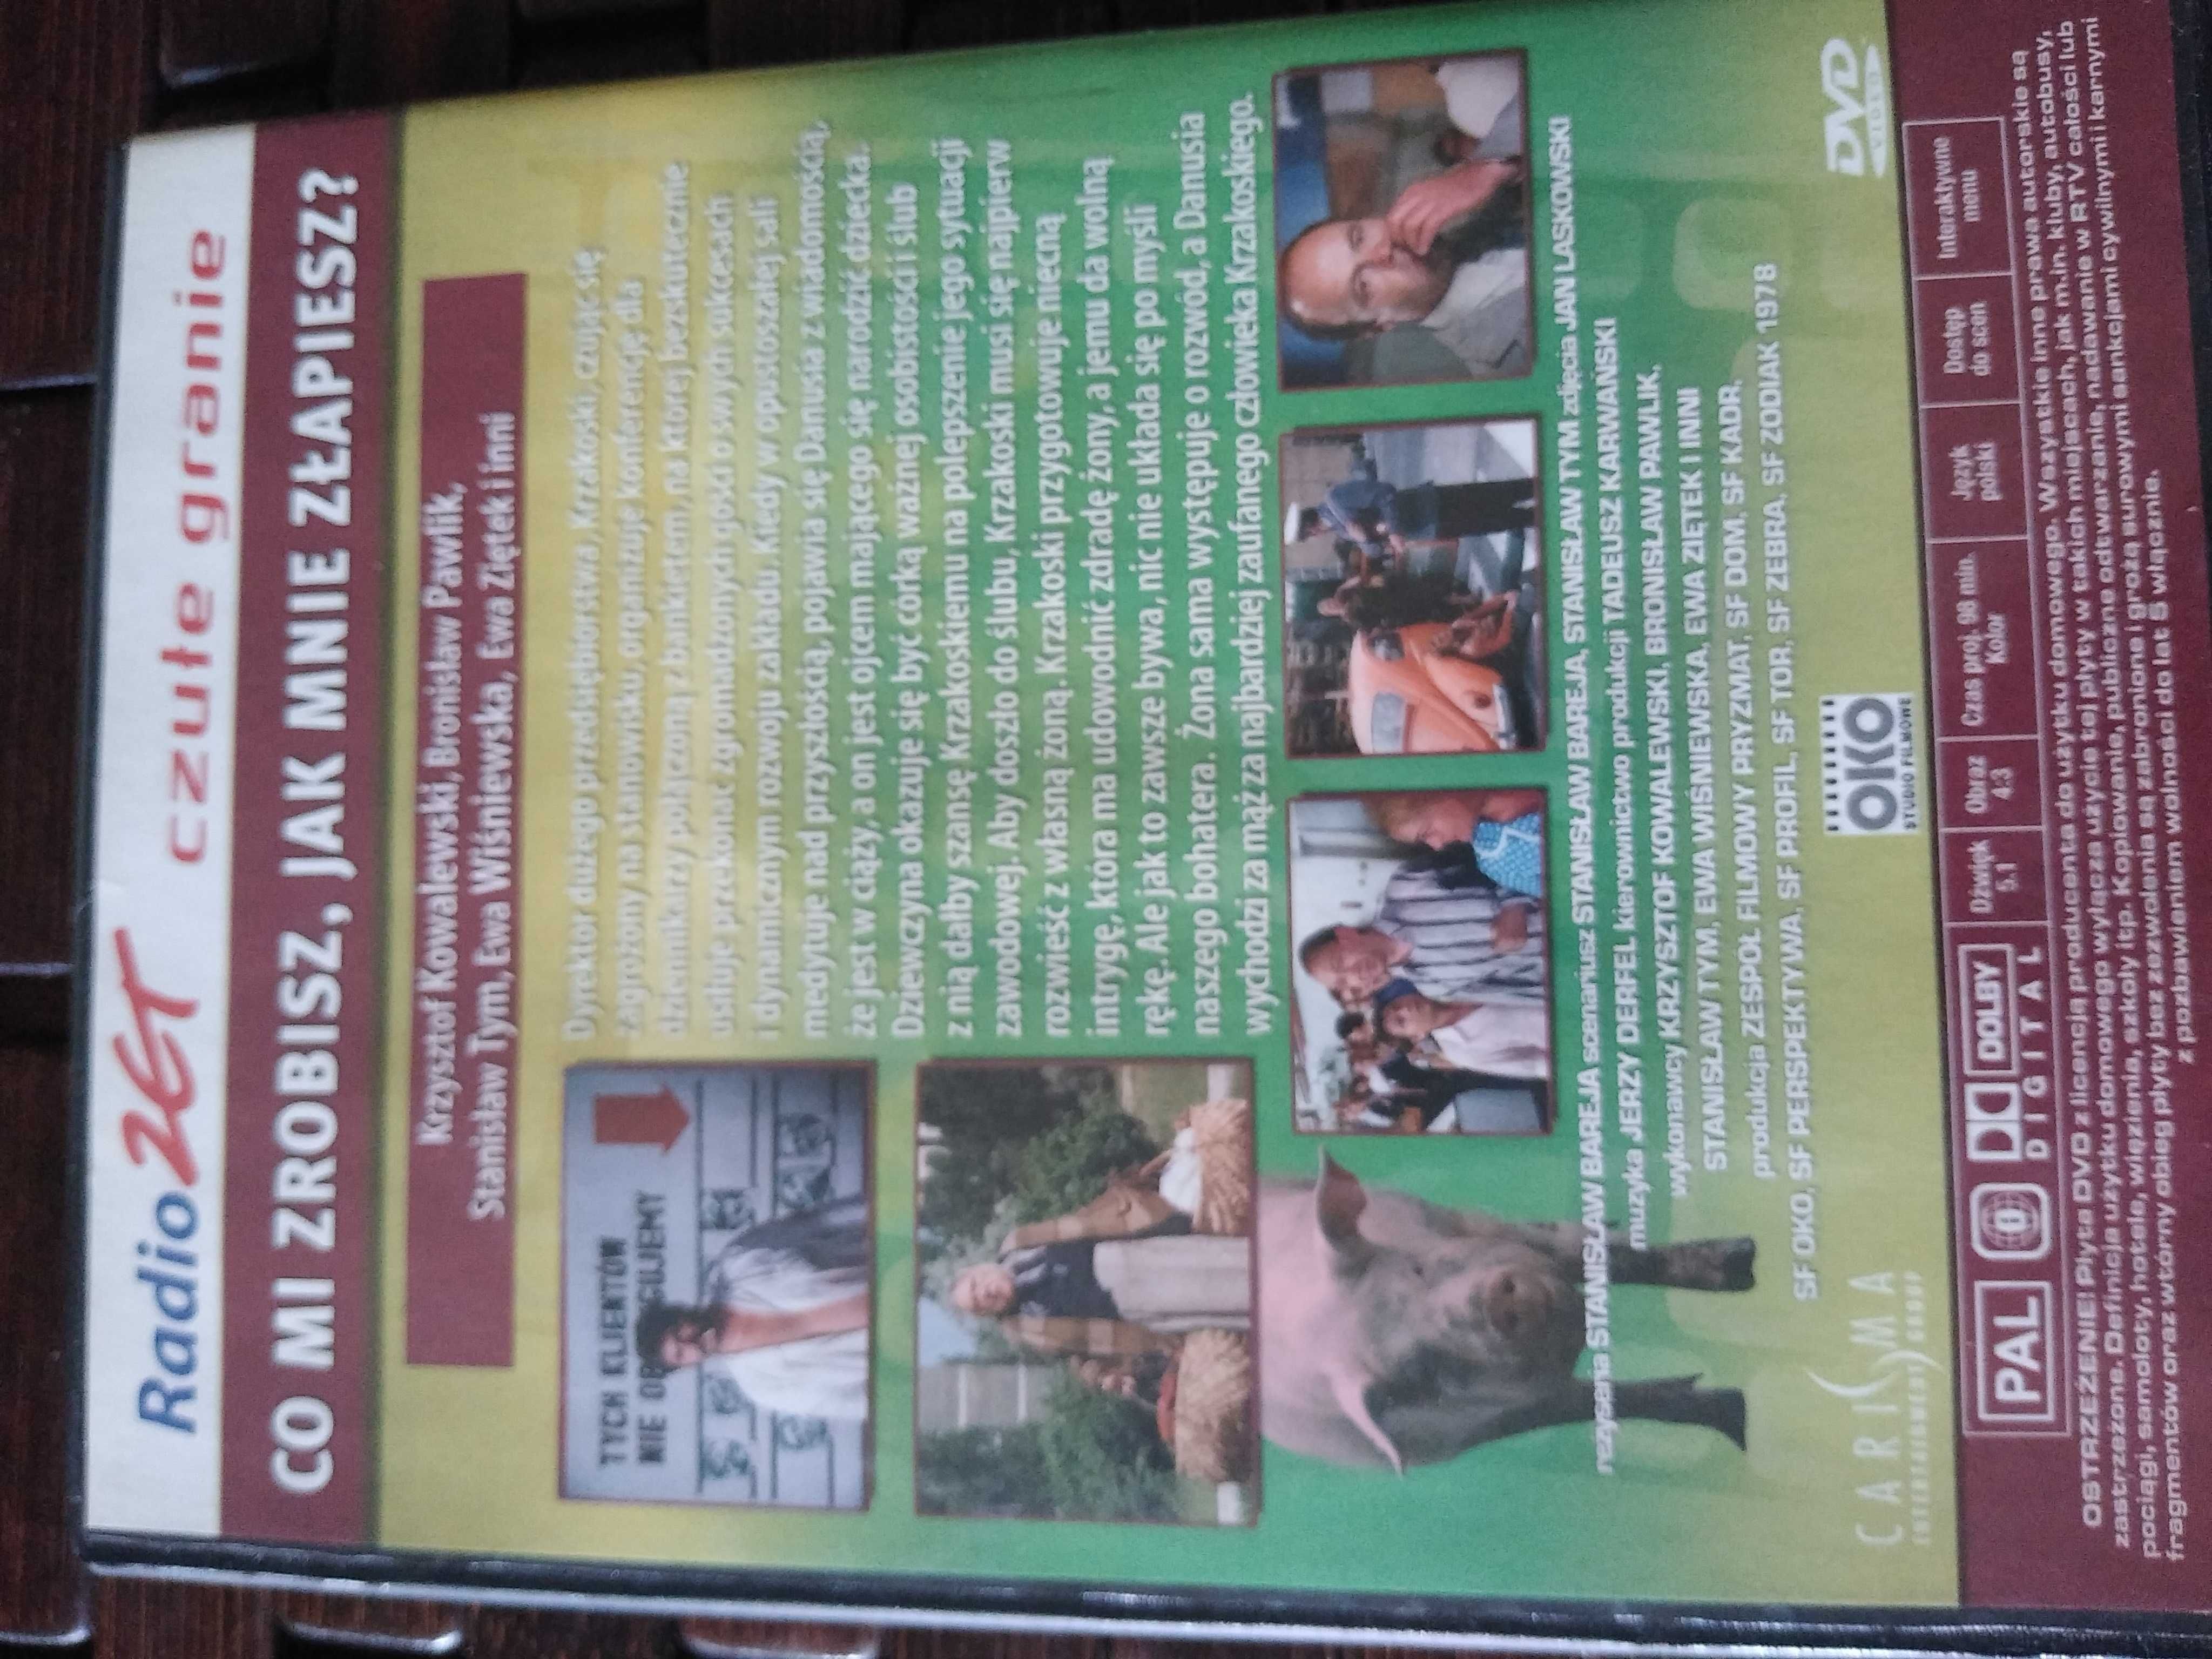 Bareja kultowe filmy  PRL  na DVD